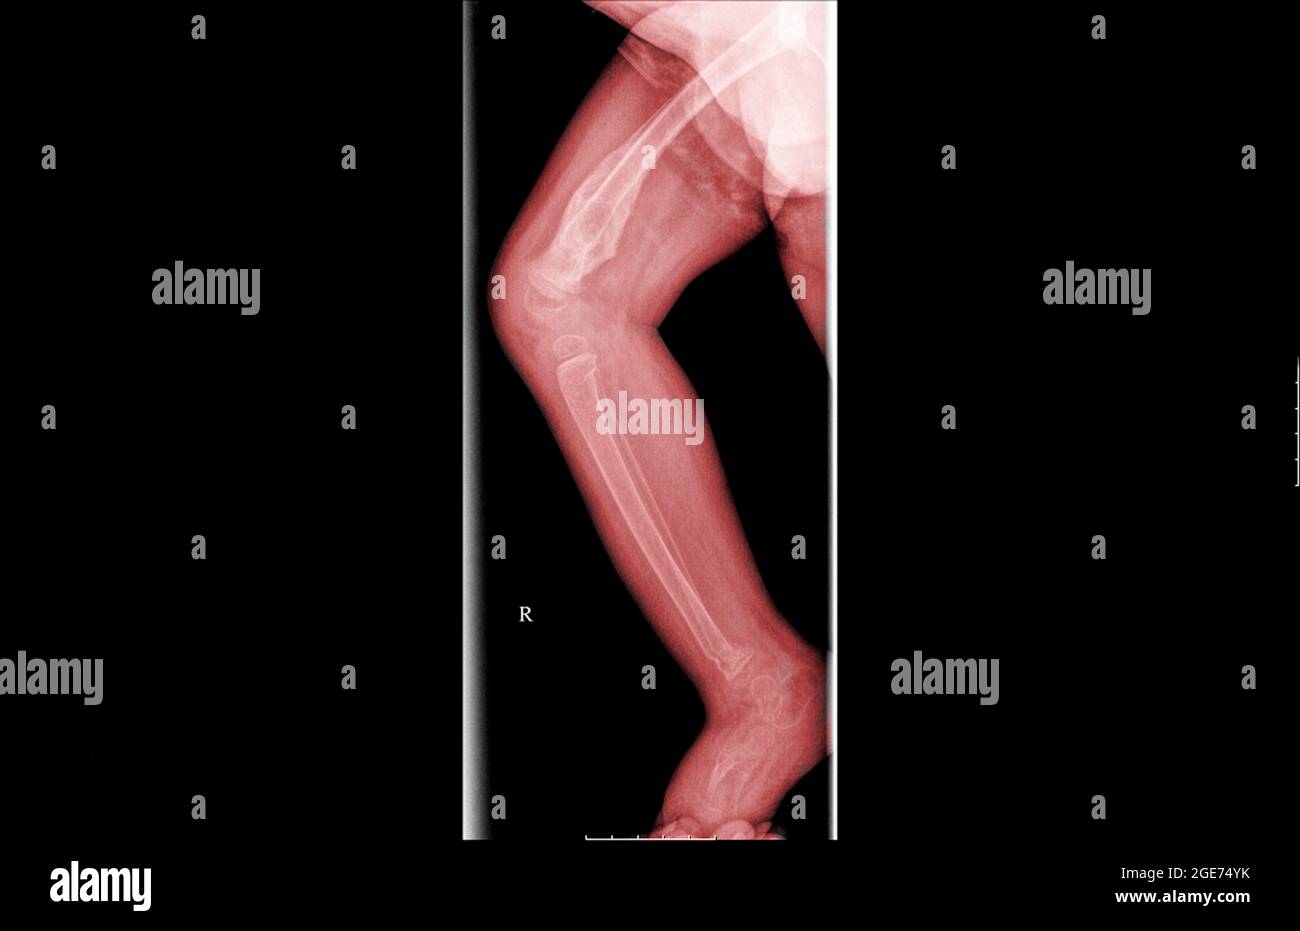 Radiographie d'un enfant de 3 ans avec un talon fracture du tibia et du péroné Banque D'Images